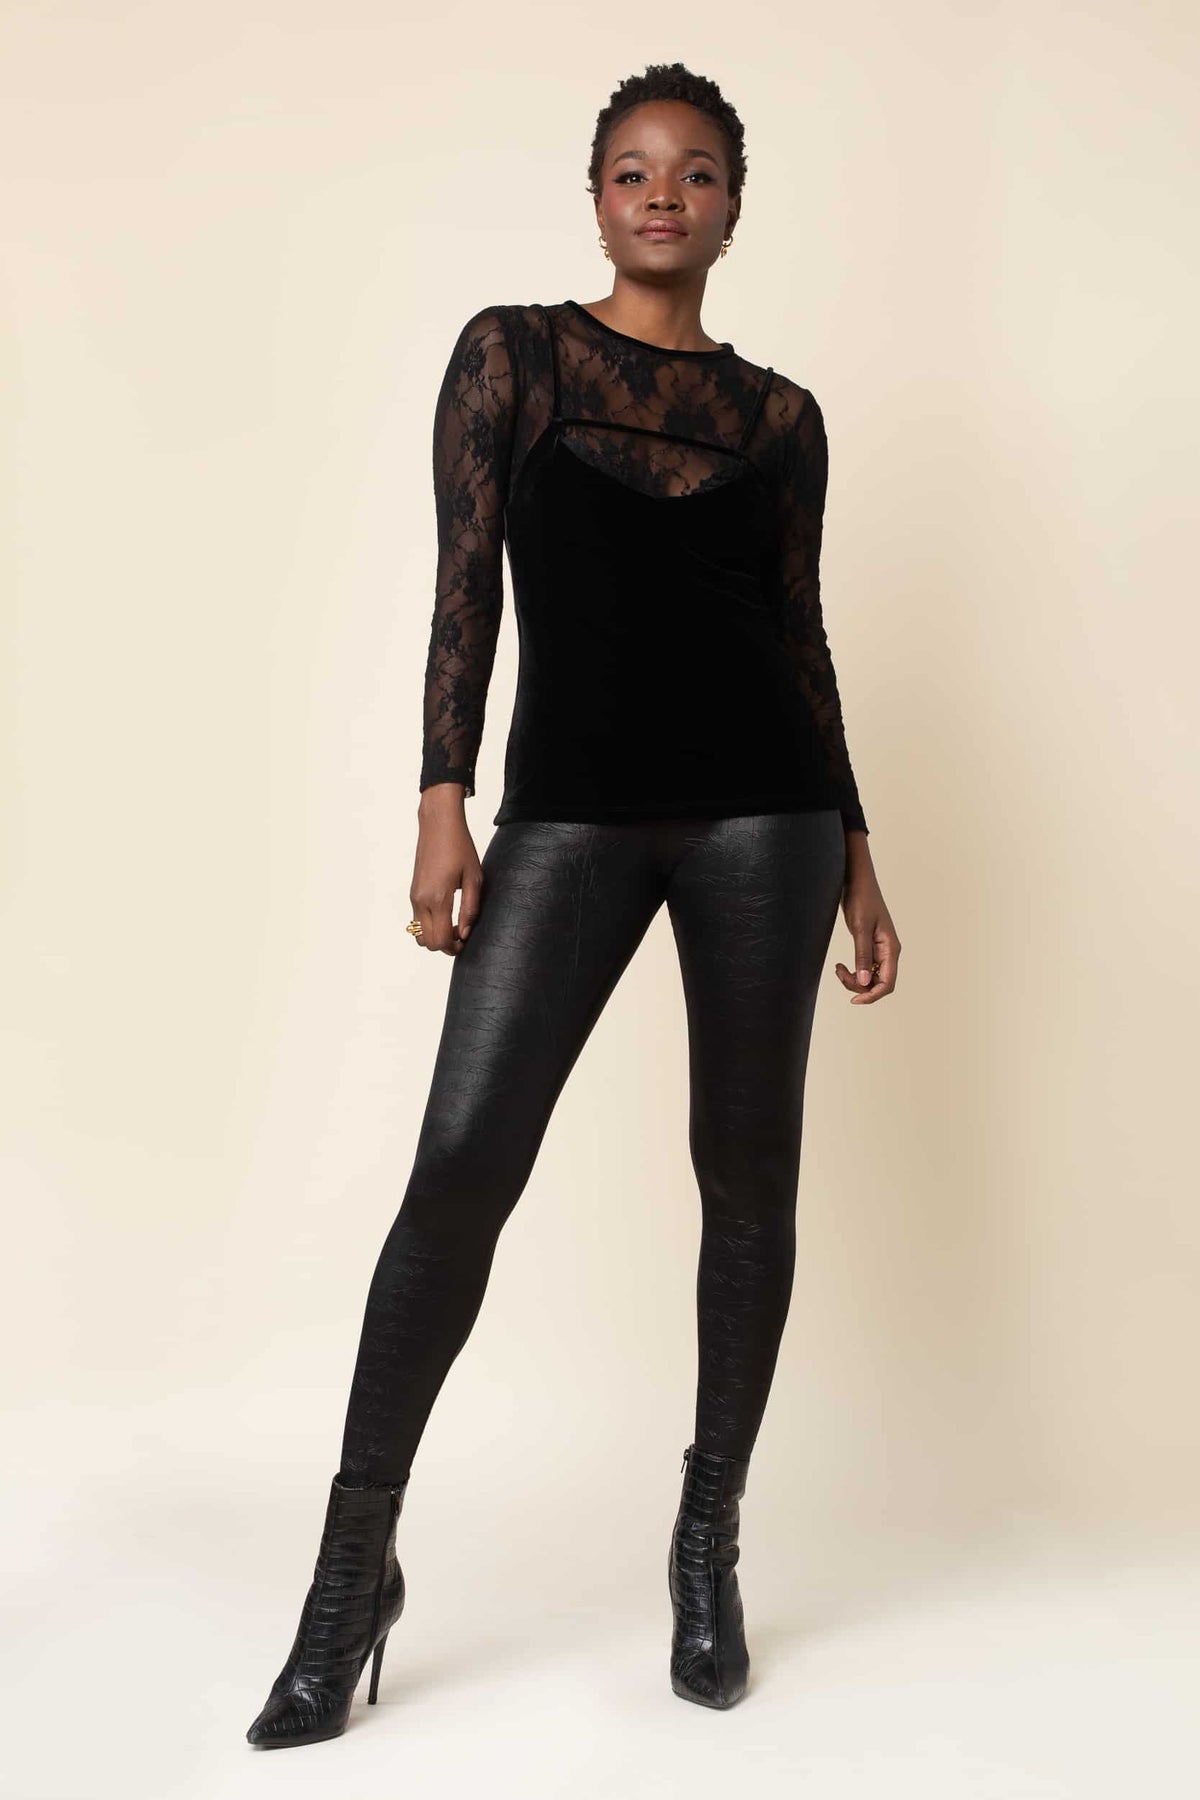 Share 163+ black snakeskin leggings outfit super hot